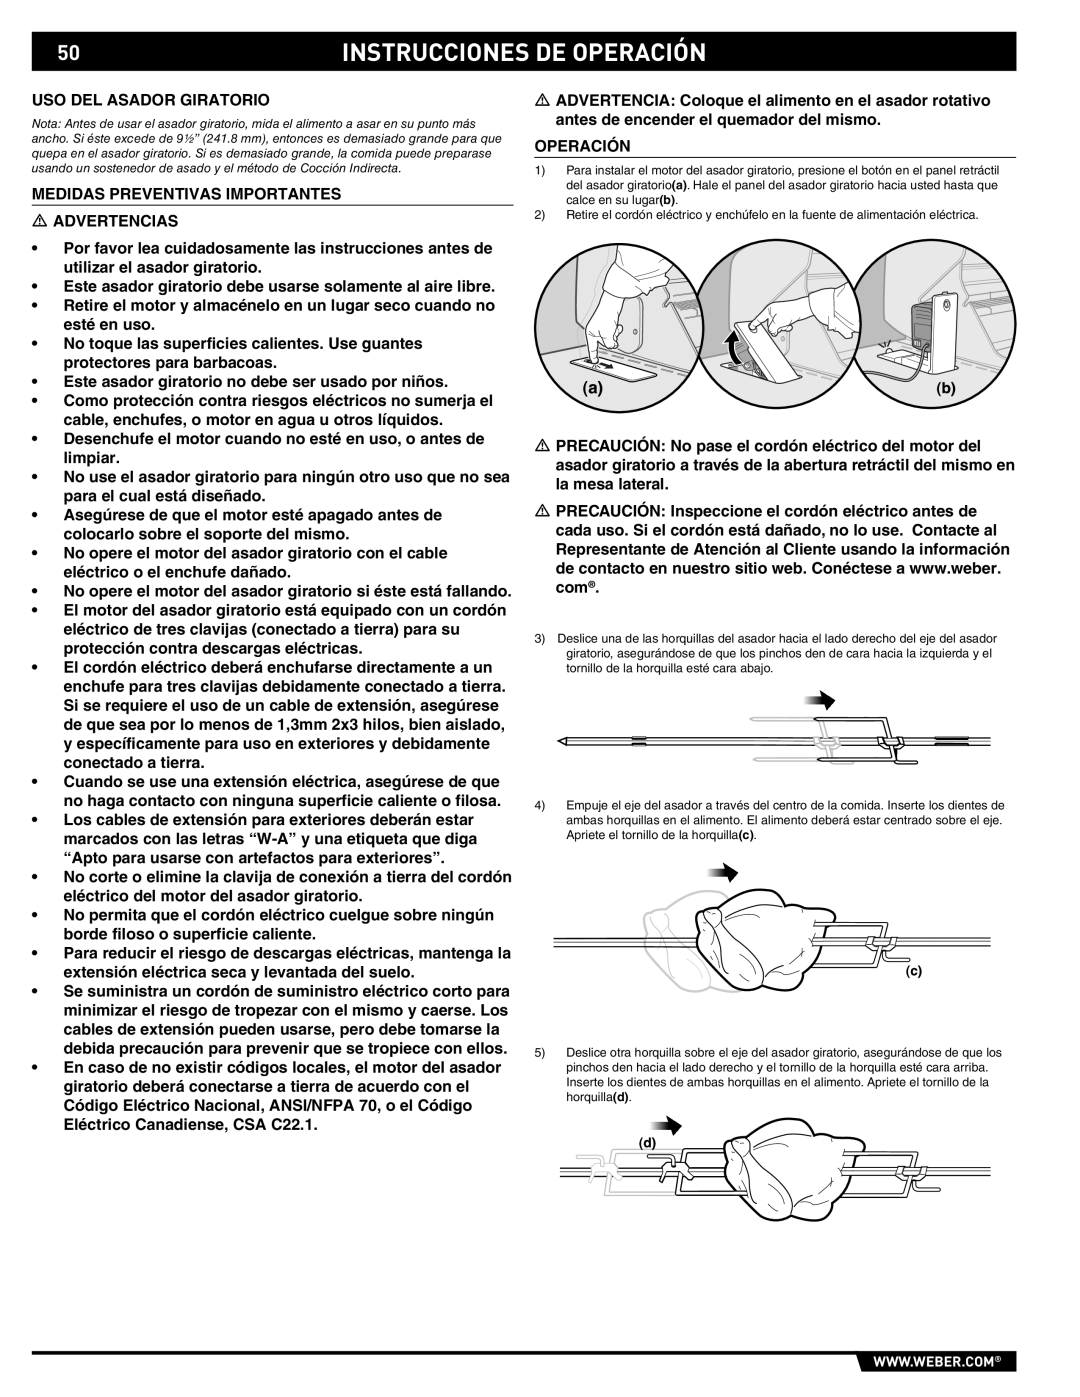 Summit 89190 manual Instrucciones De Operación, Uso Del Asador Giratorio 